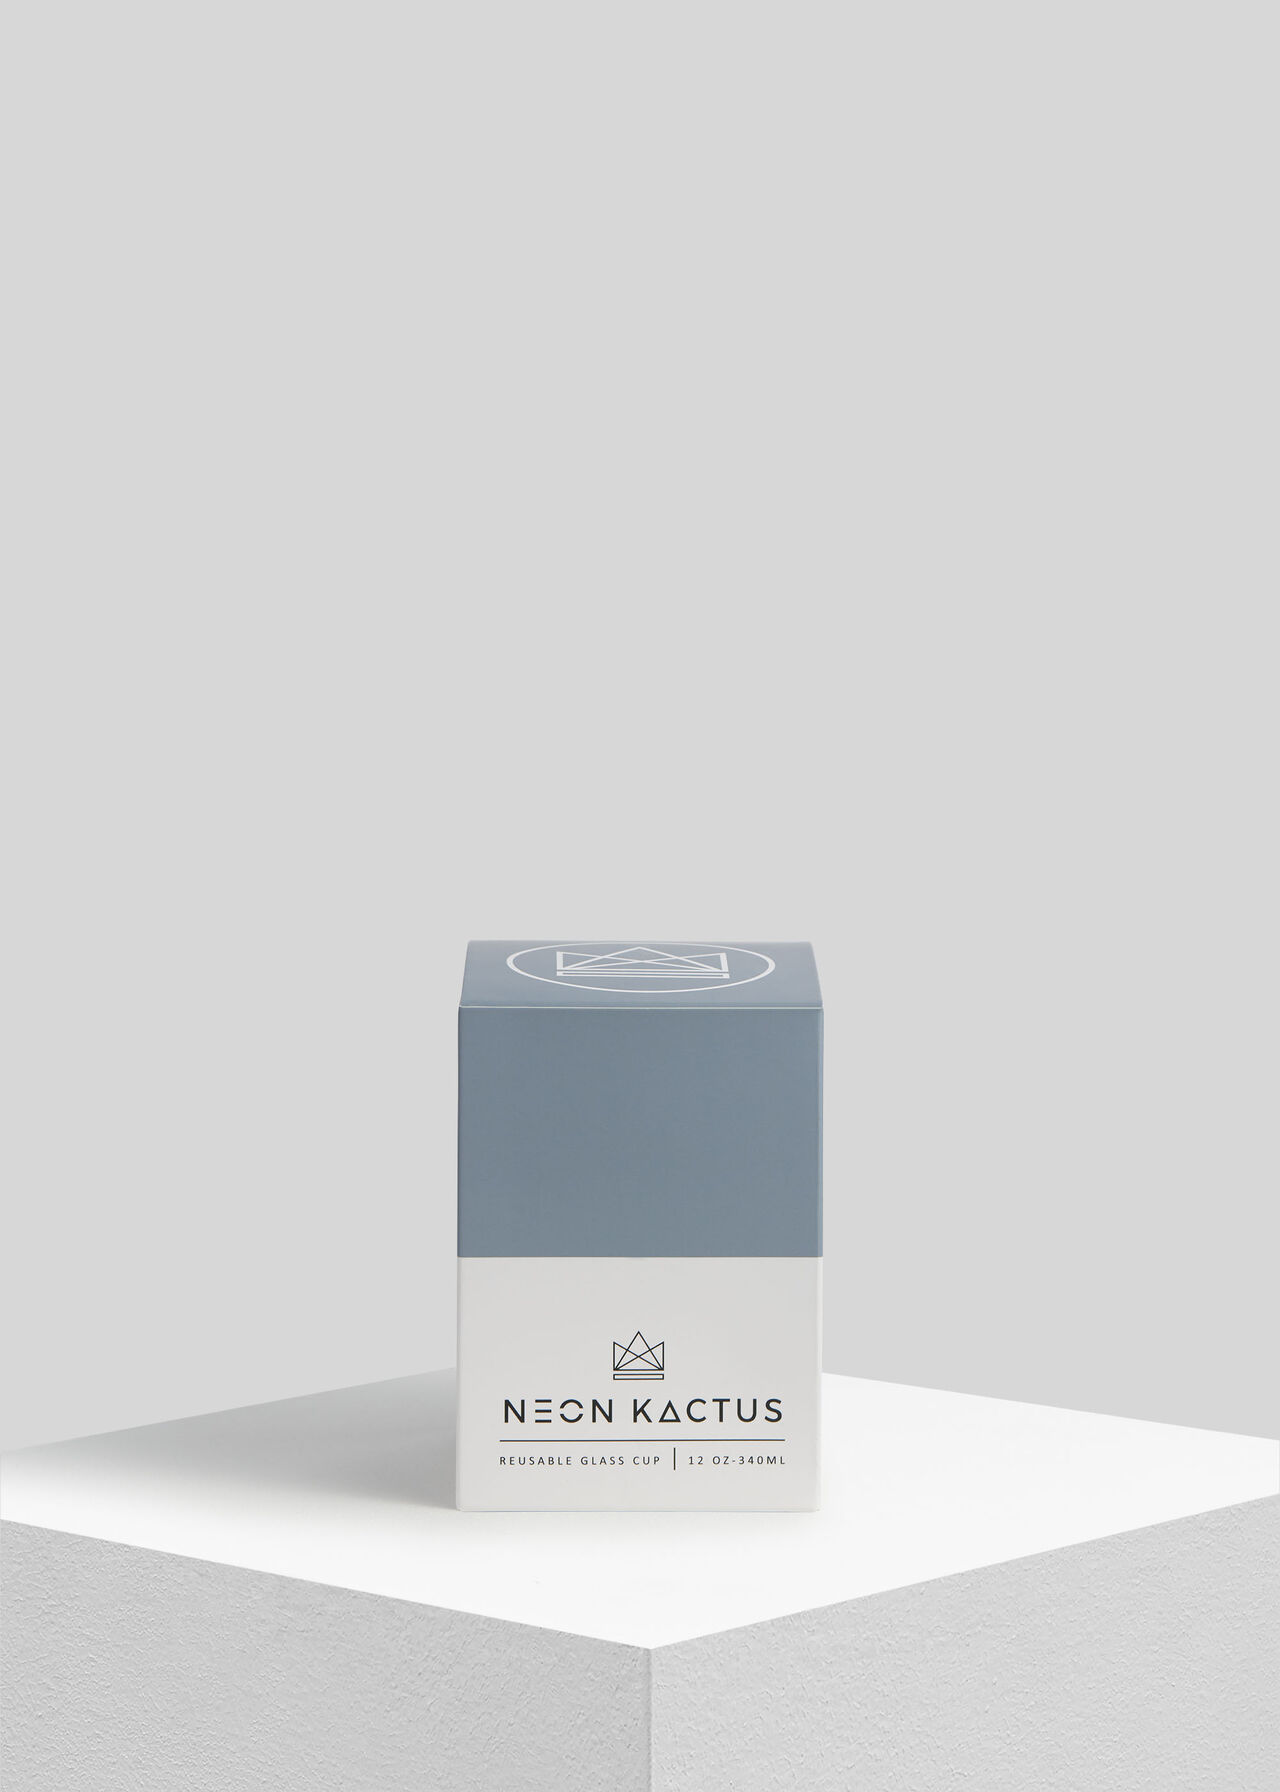 Neon Kactus Reusable Glass Cup Grey